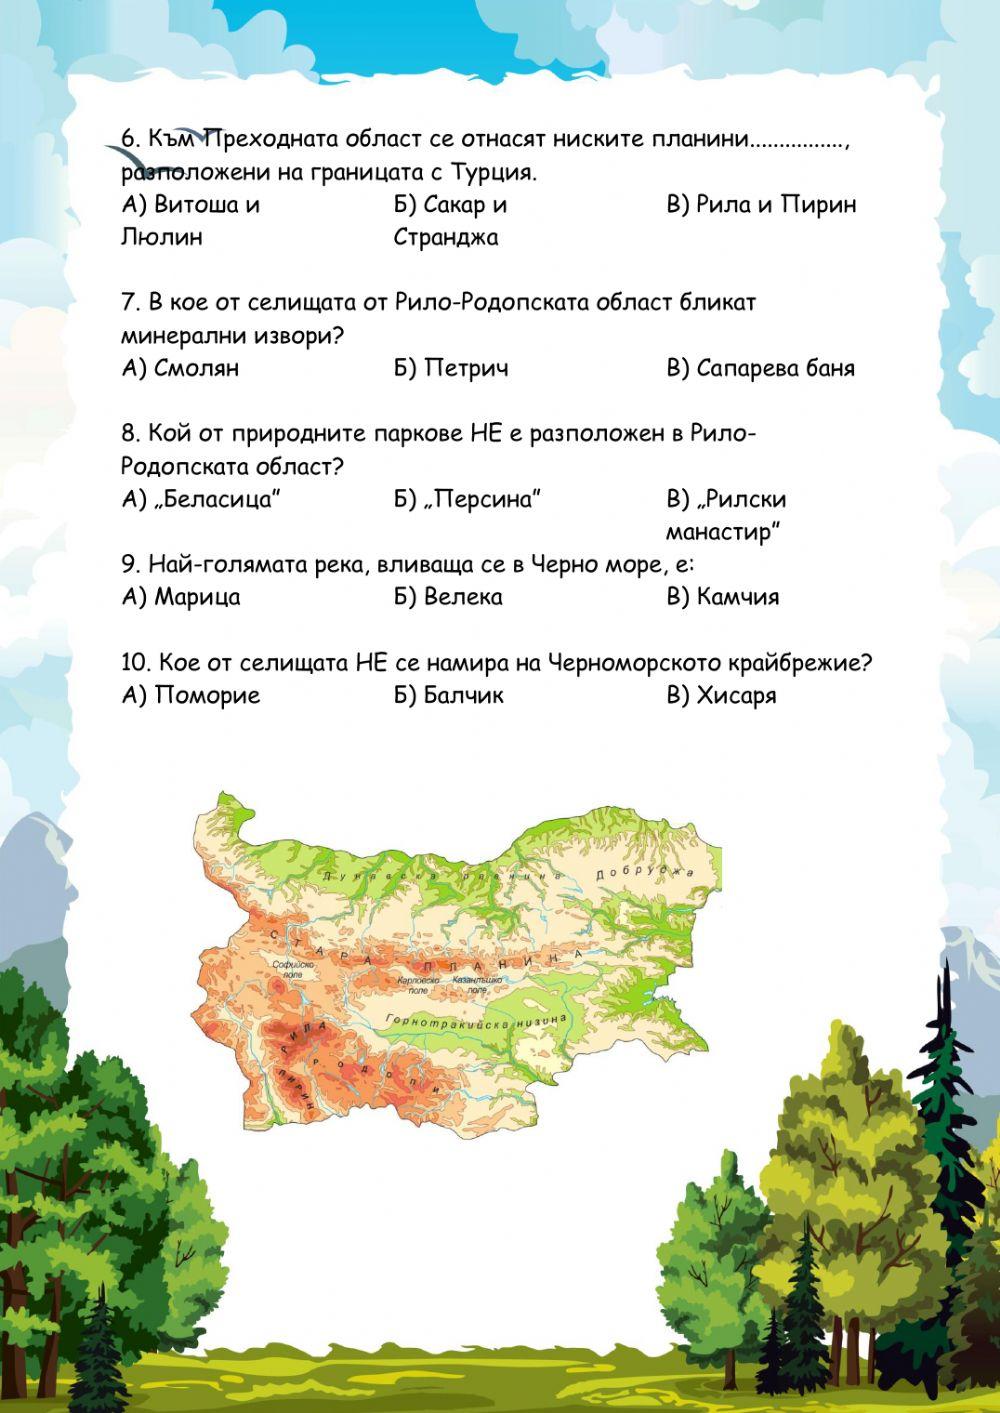 Природни области на България